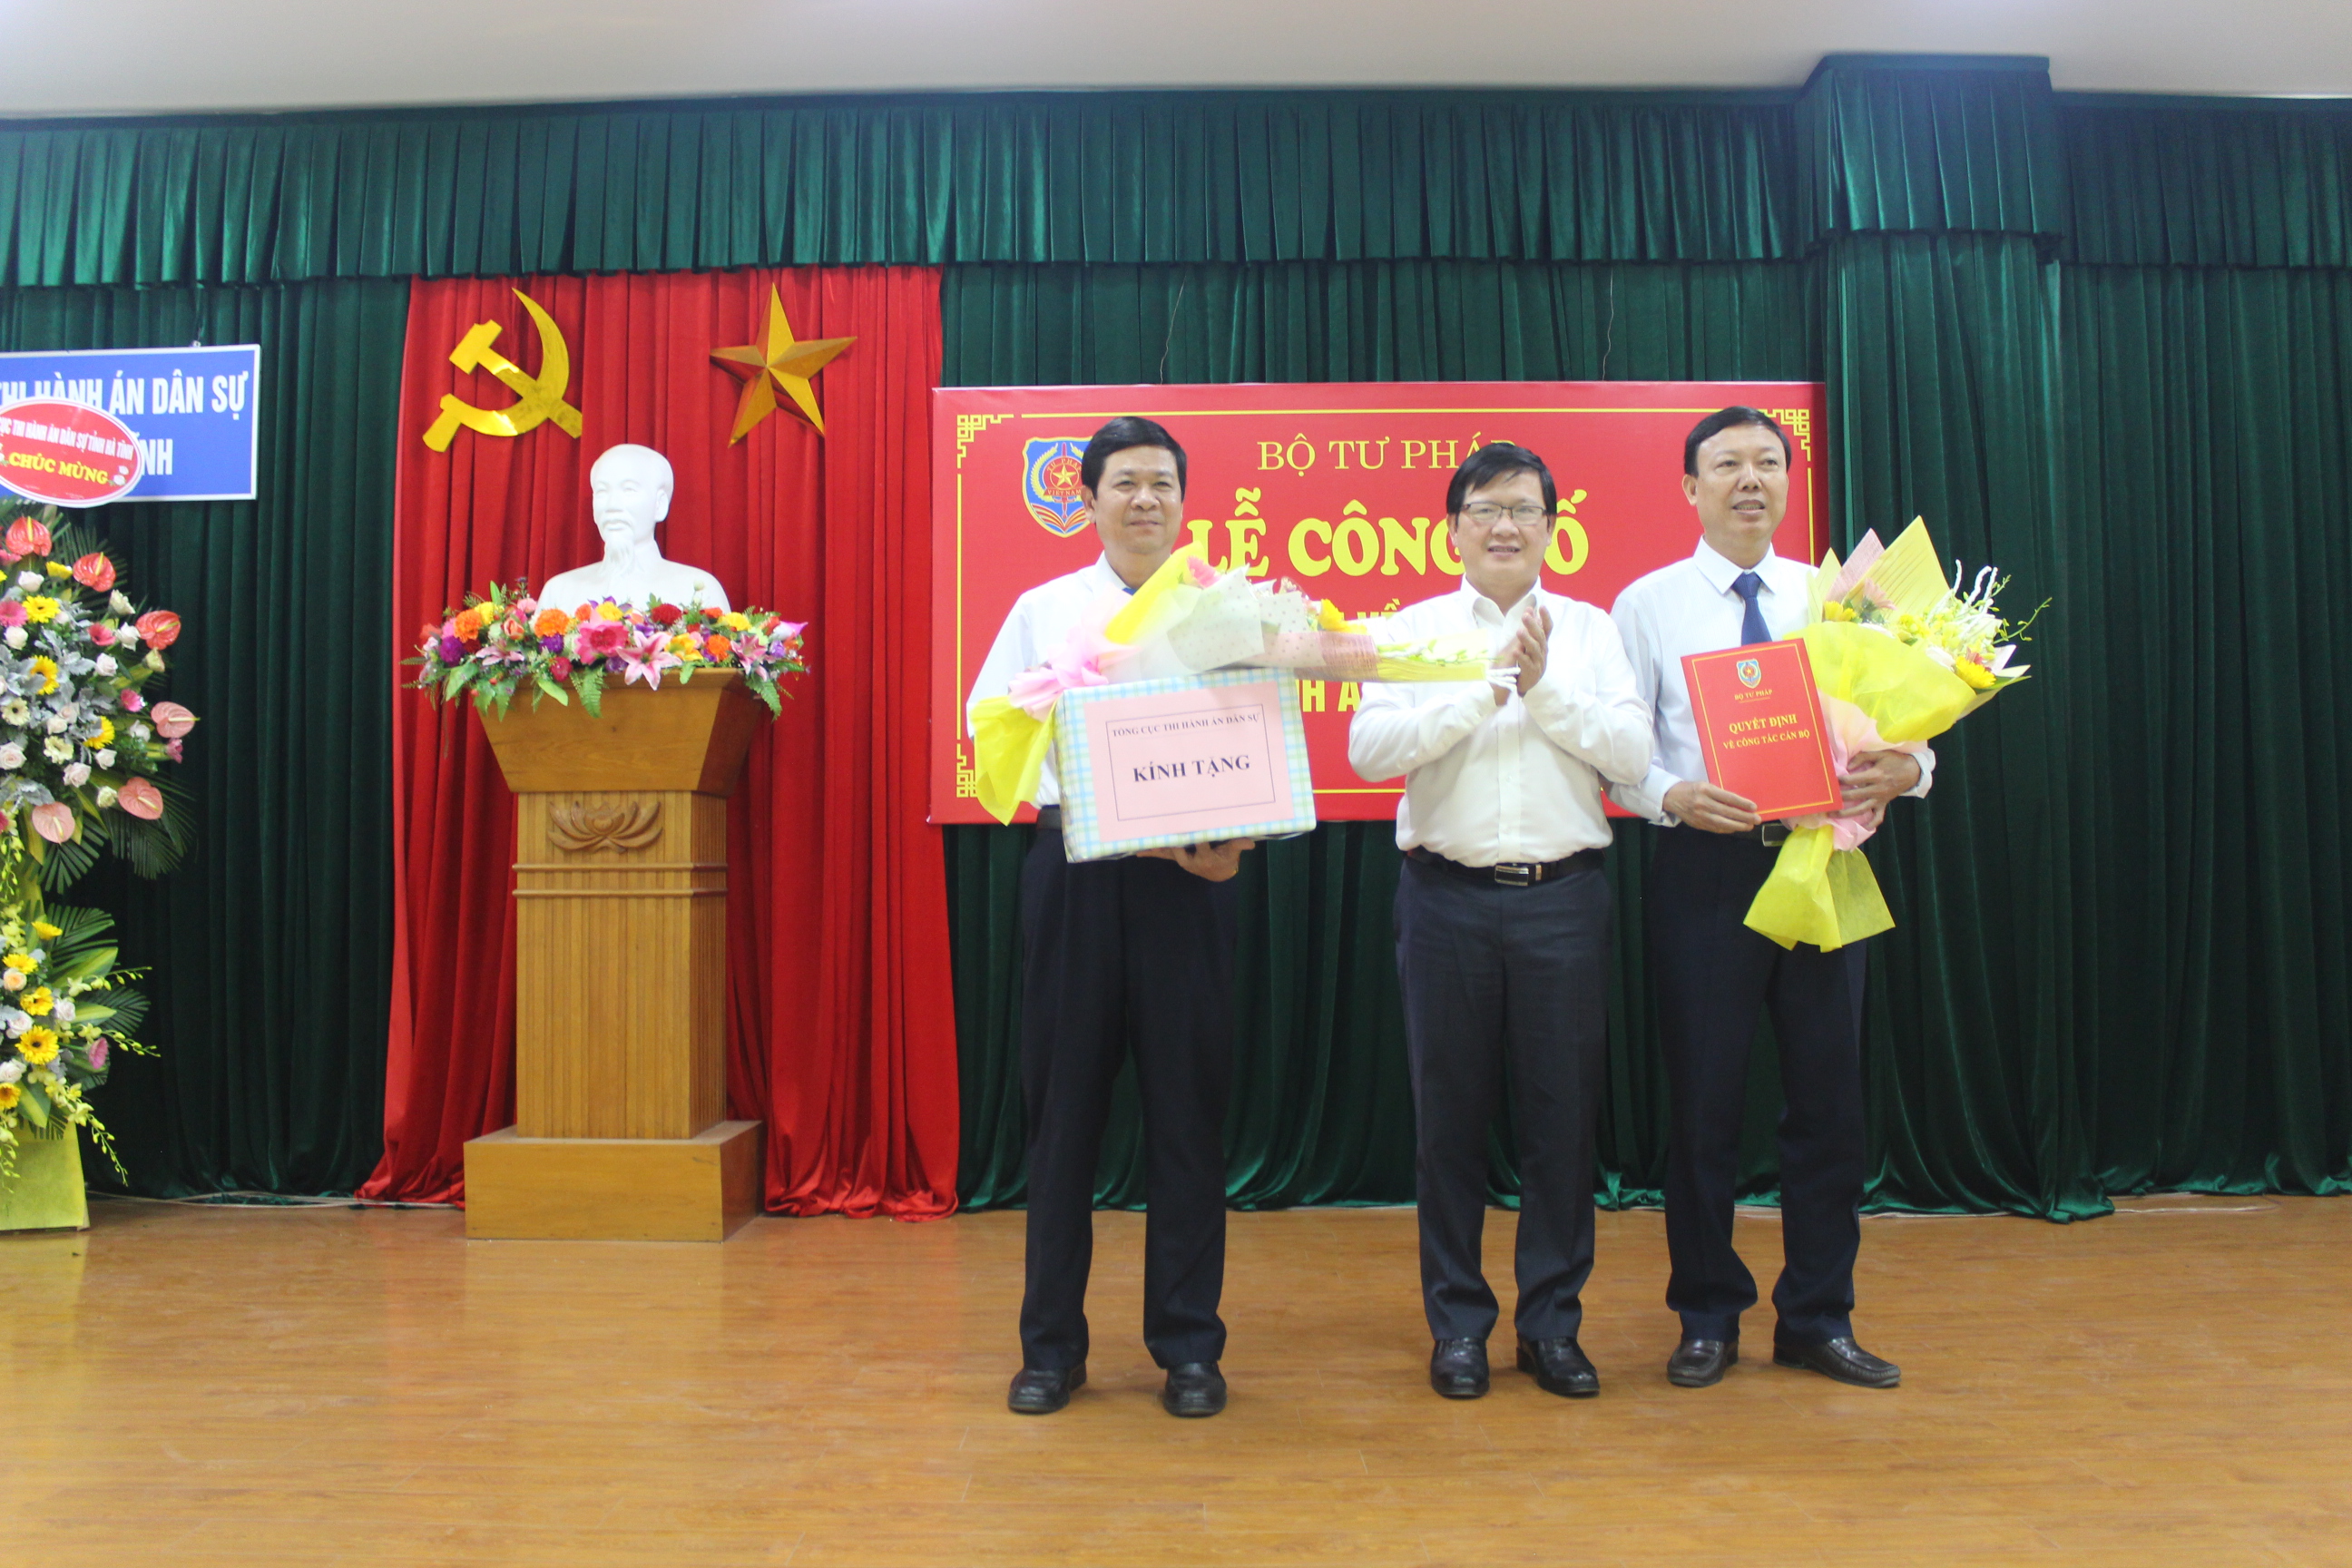 Lễ công bố các quyết định về tổ chức, cán bộ tại Cục Thi hành án dân sự tỉnh Hà Tĩnh